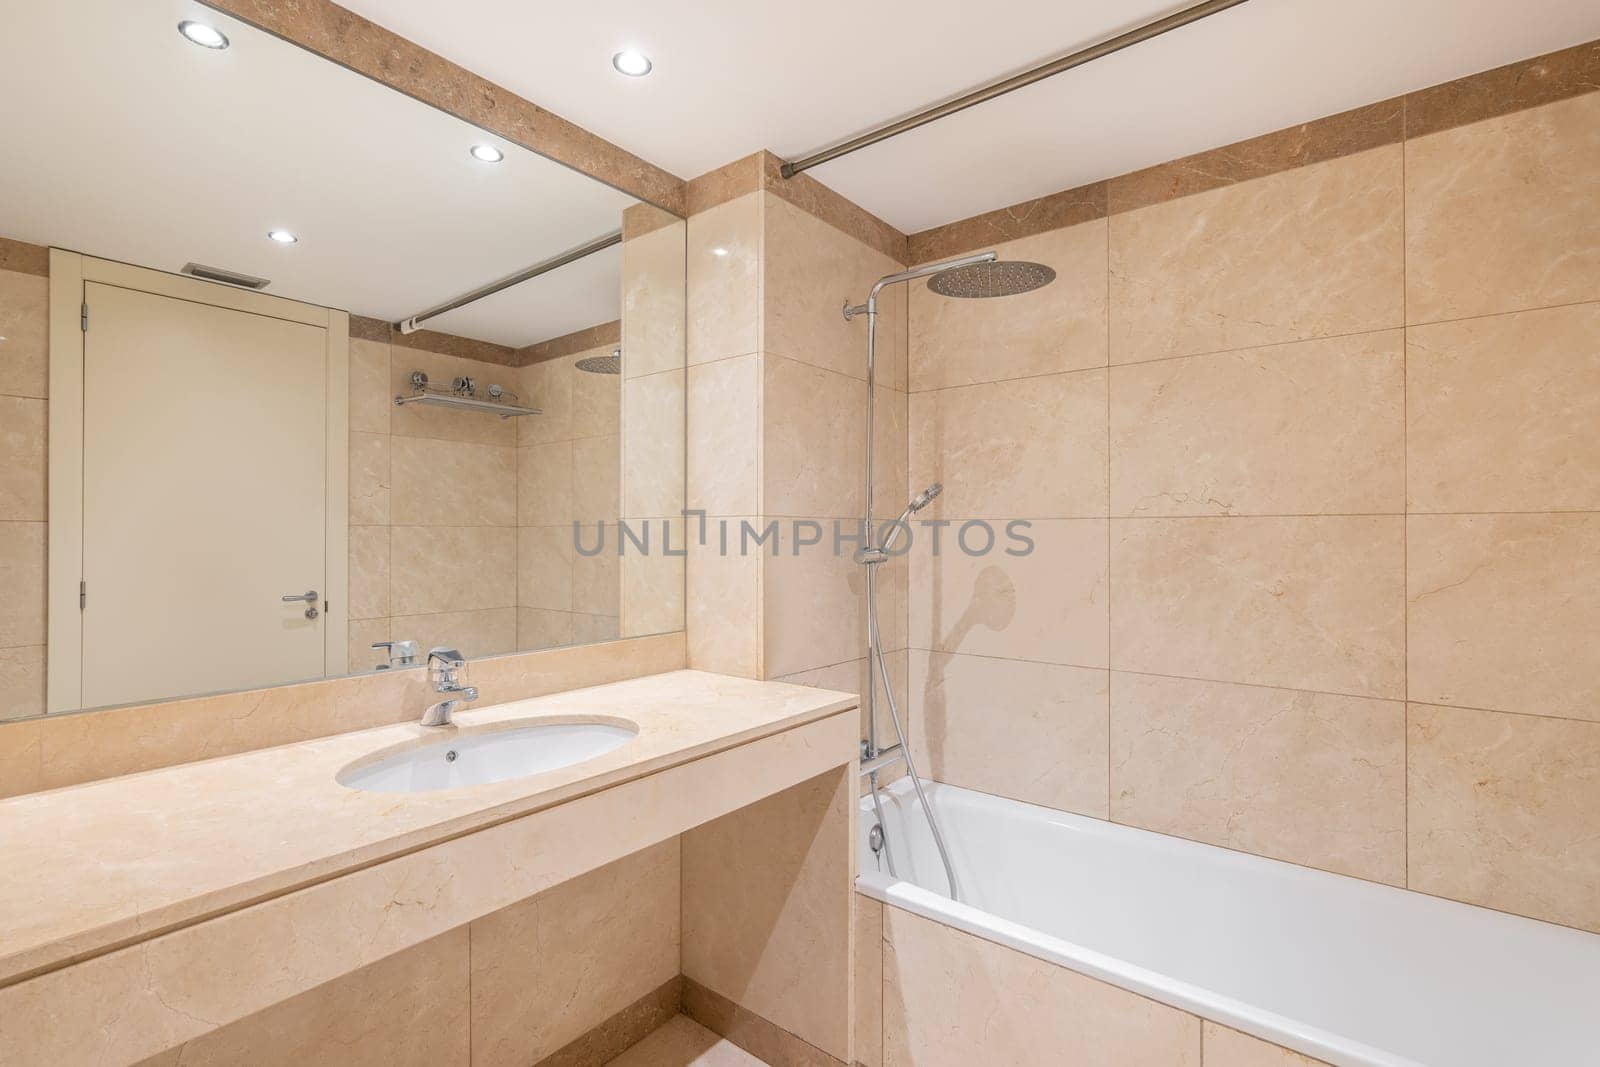 Standard bathroom with bathtub shower system and washbasin by apavlin